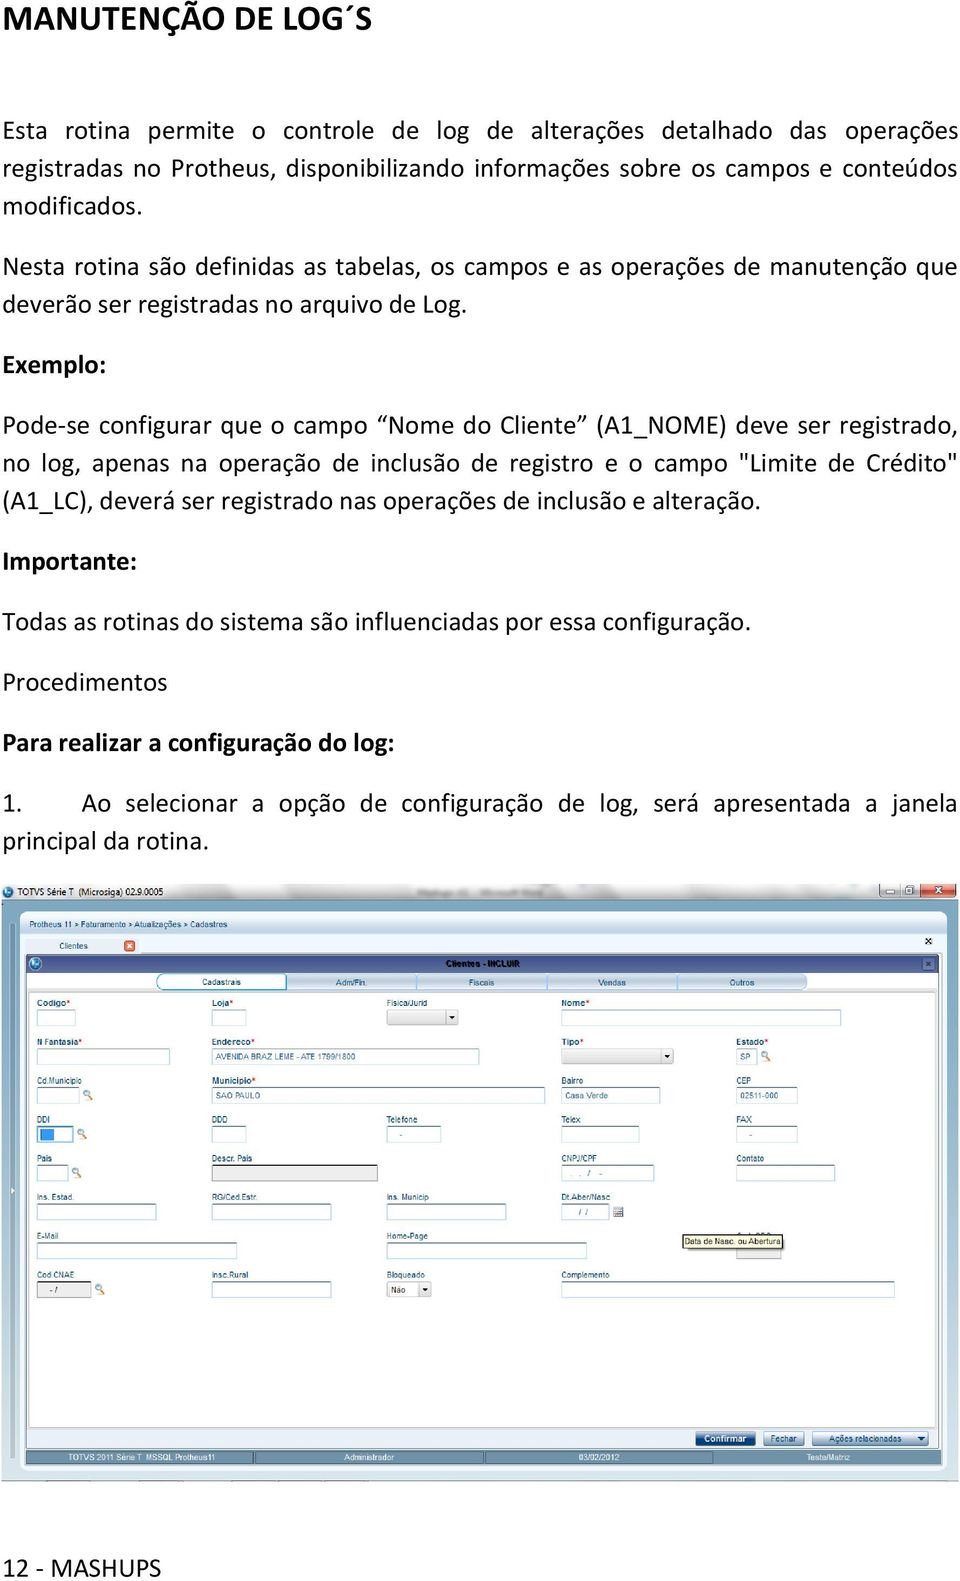 Exemplo: Pode-se configurar que o campo Nome do Cliente (A1_NOME) deve ser registrado, no log, apenas na operação de inclusão de registro e o campo "Limite de Crédito" (A1_LC), deverá ser registrado